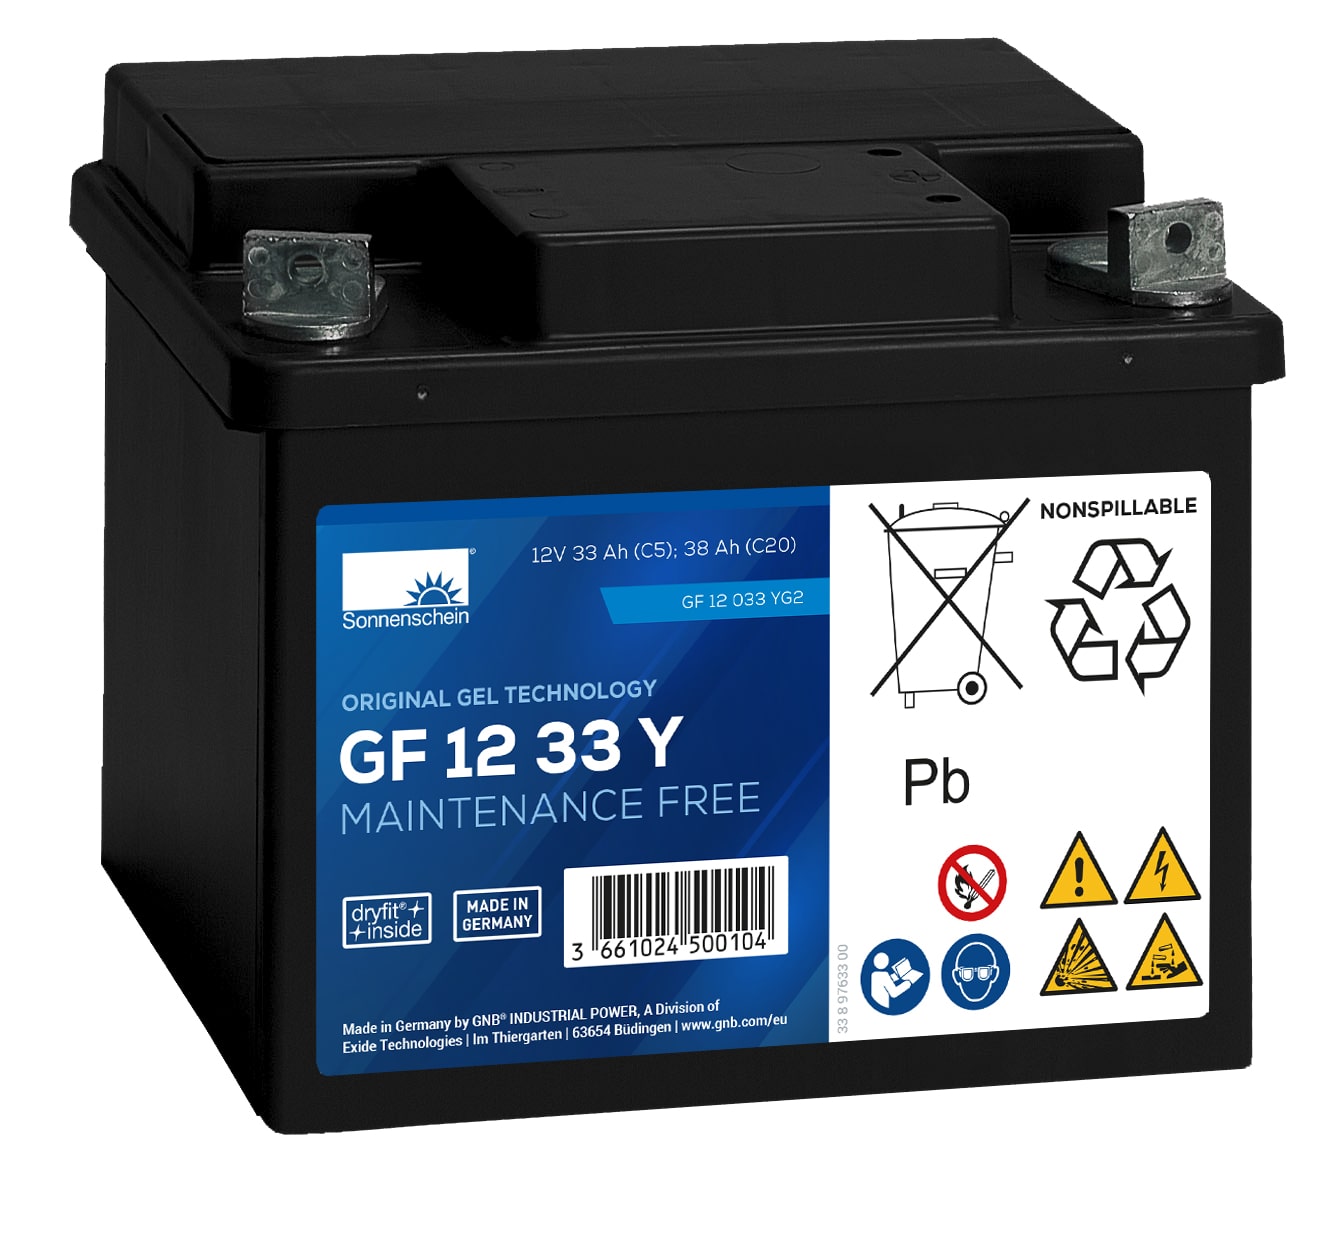 Sonnenschein GF12033YG2 - Battery Service Hub